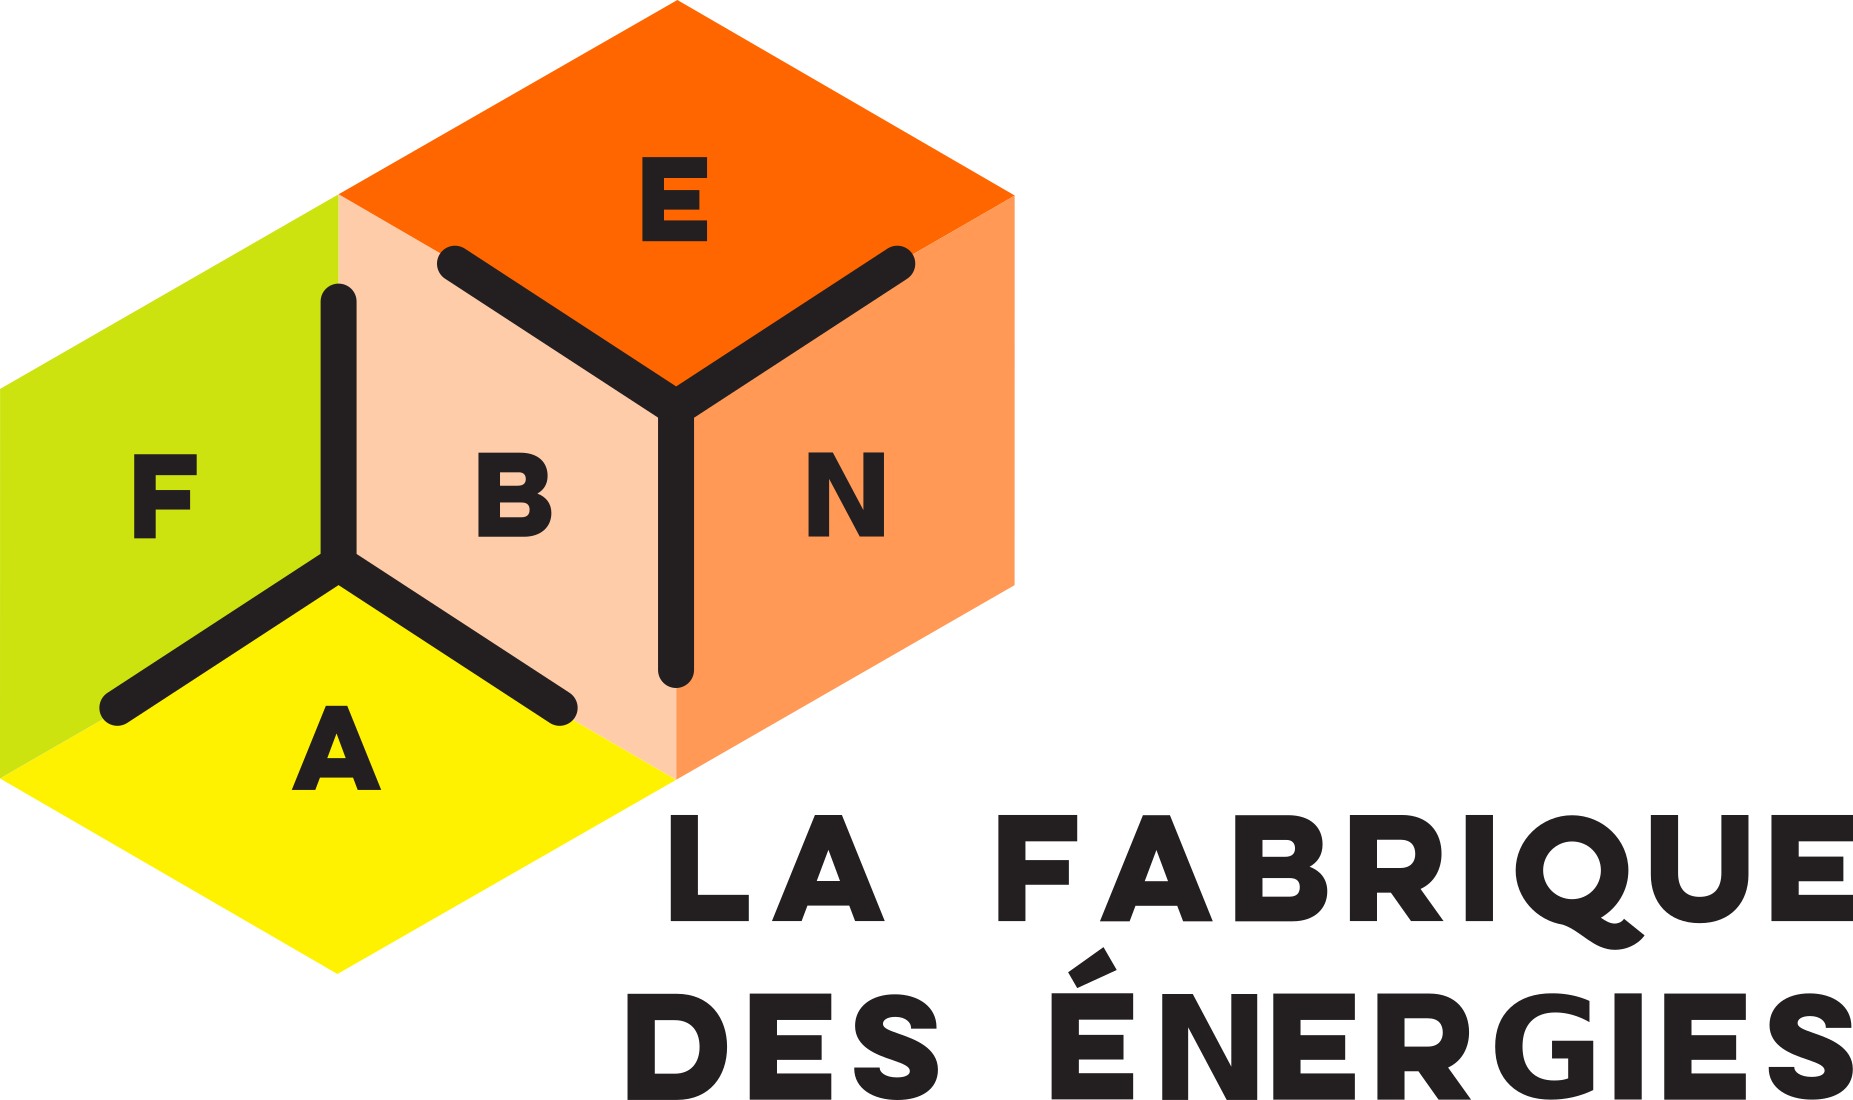 Fabenergies-logo.png